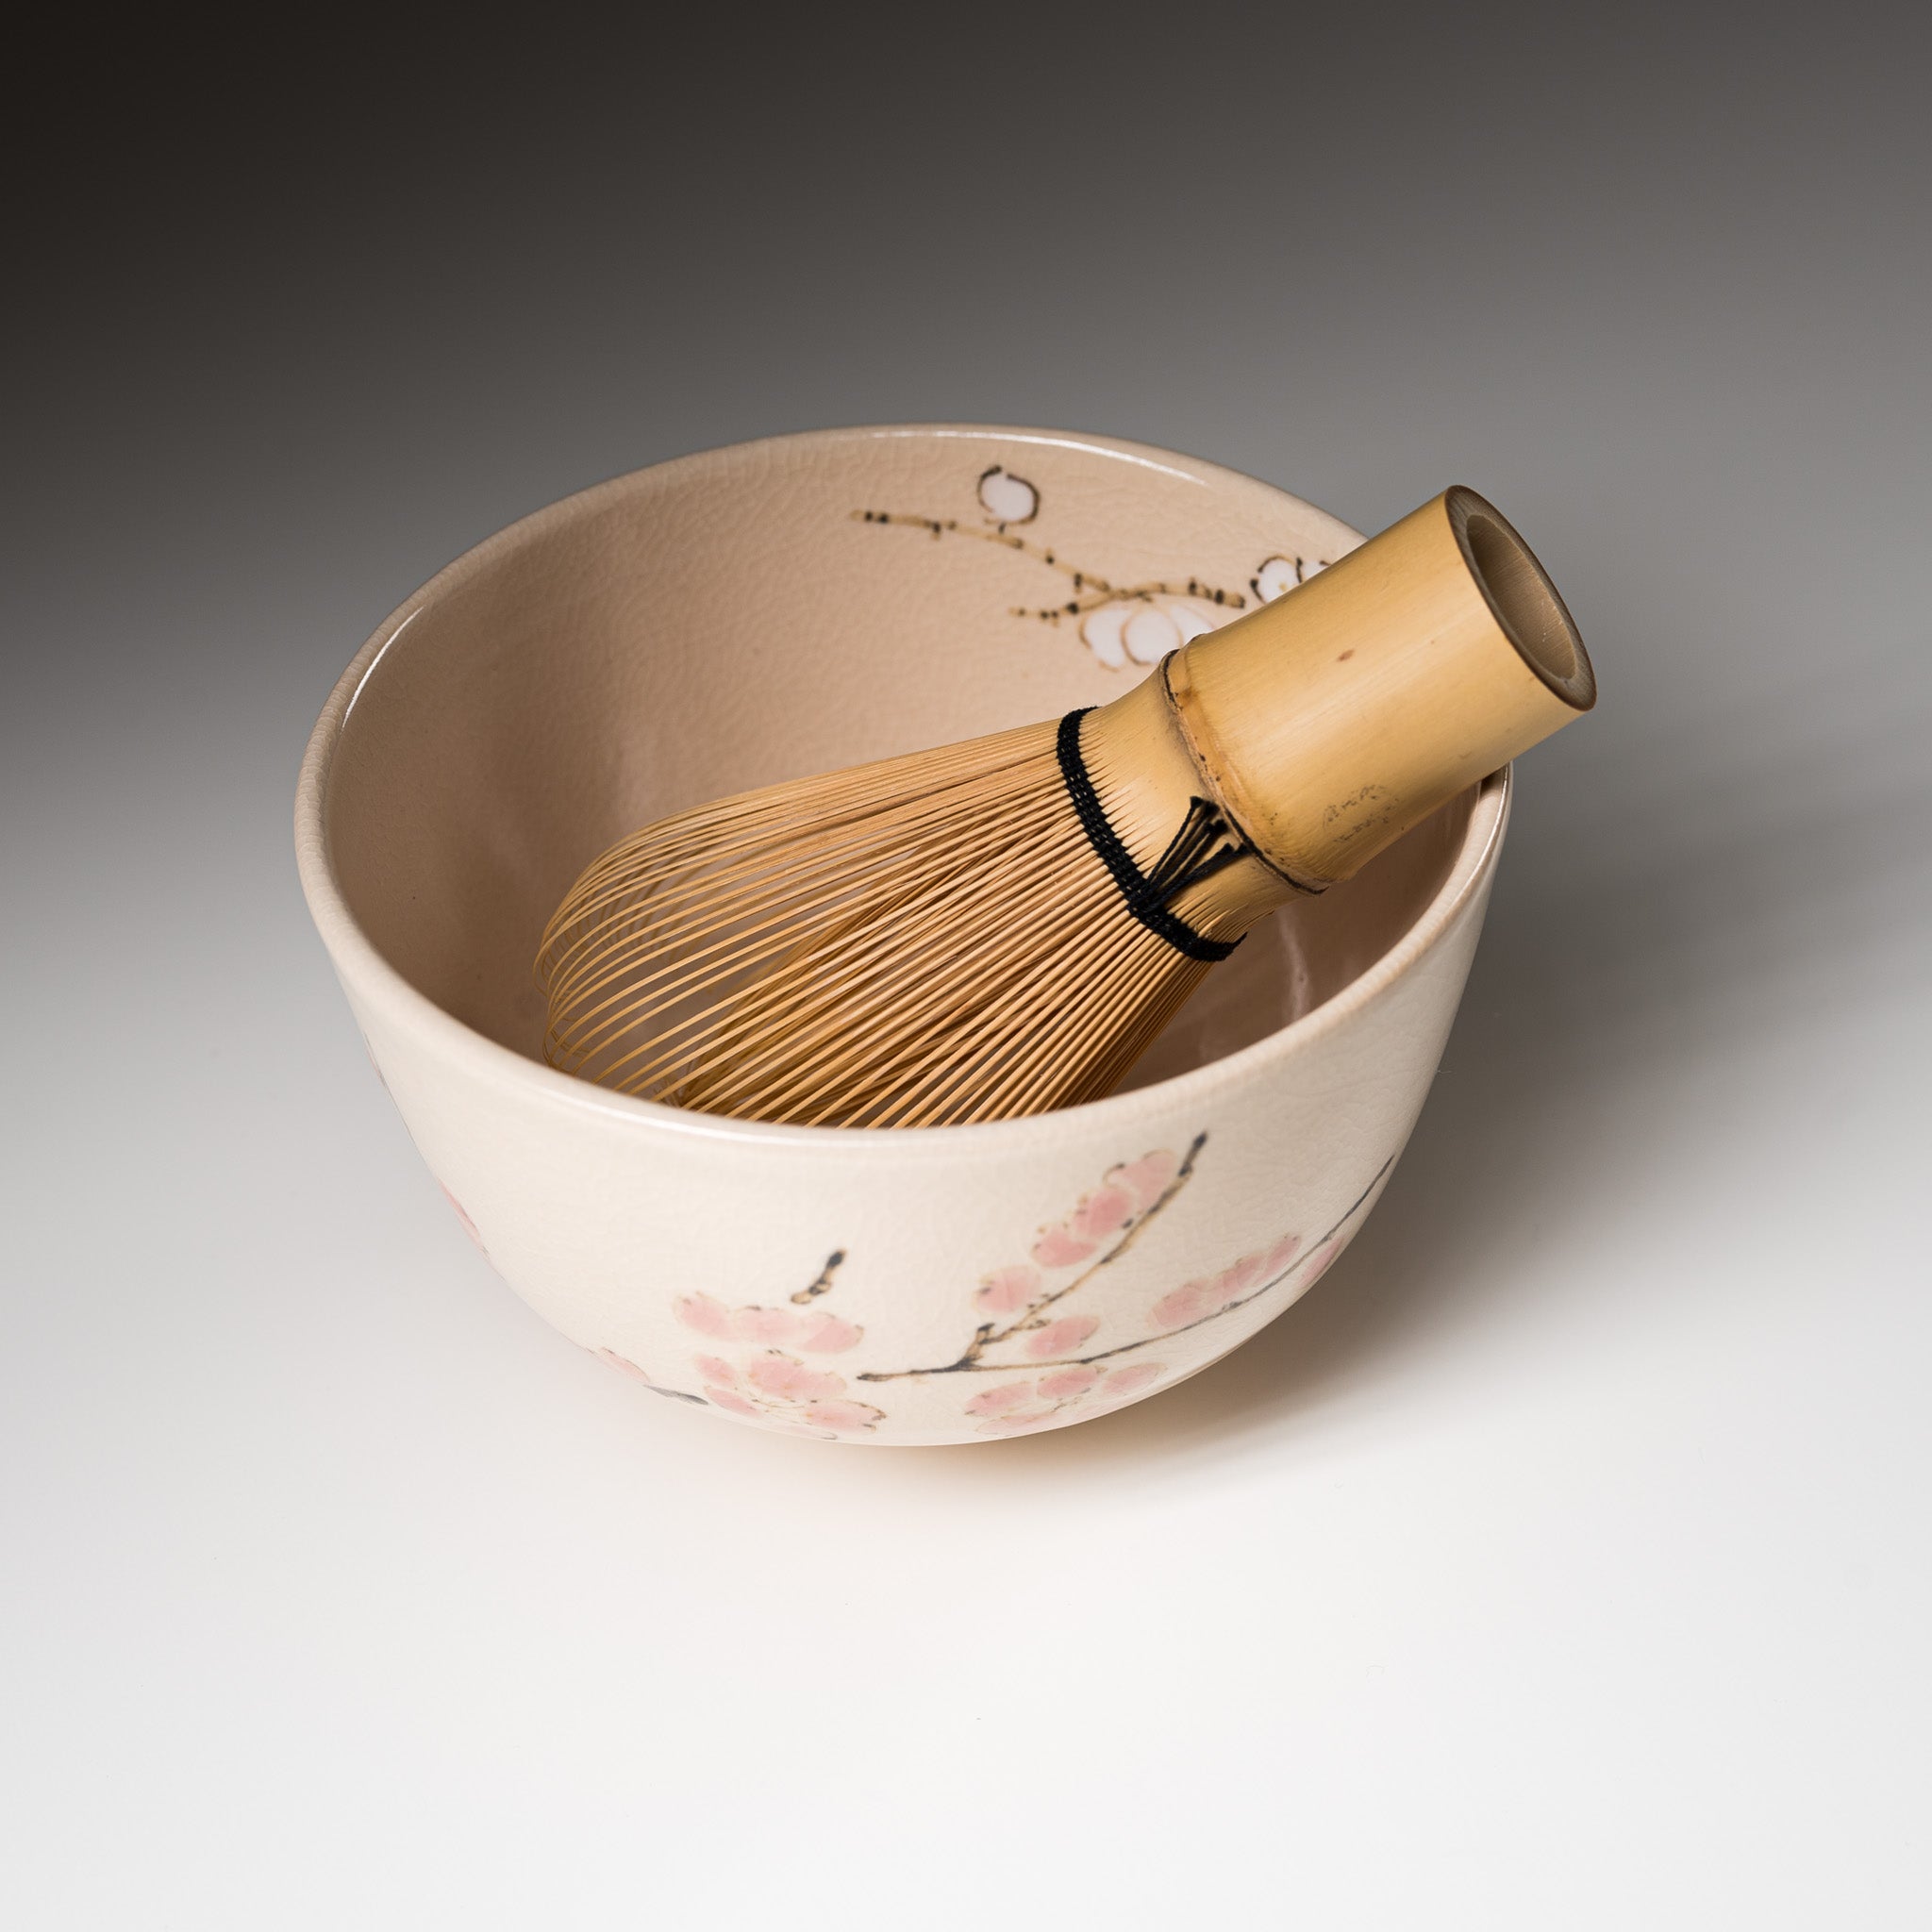 Kyo Kiyomizu Ware Handmade Matcha Bowl - Kouhaku Edaume  / 京焼・清水焼き